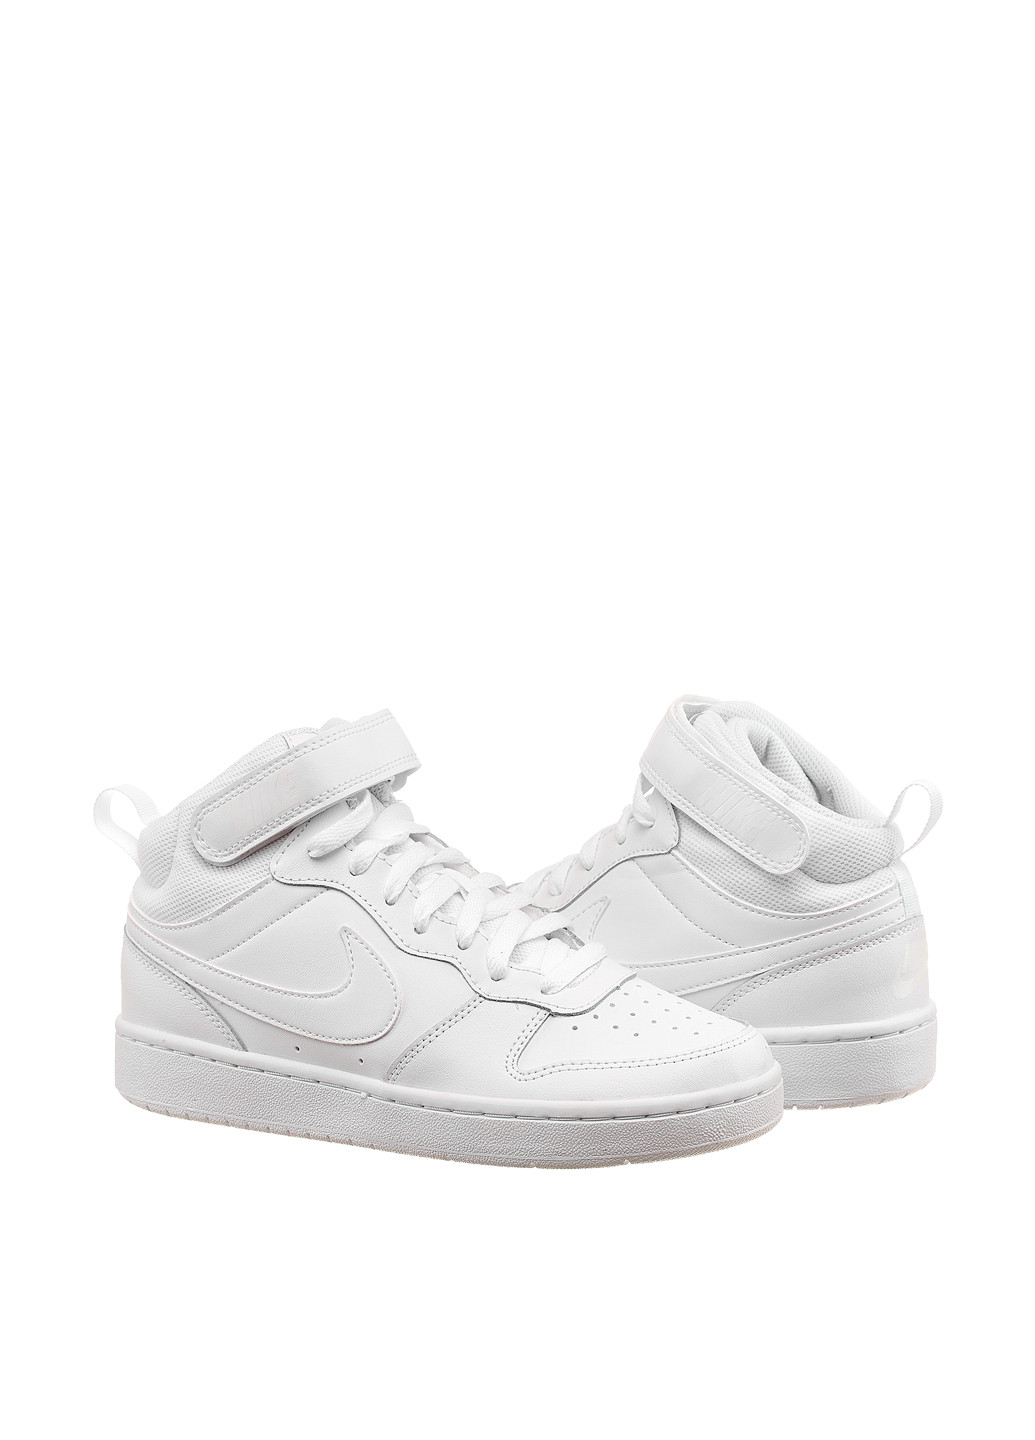 Белые демисезонные кроссовки cd7782-100_2024 Nike COURT BOROUGH MID 2 Gs